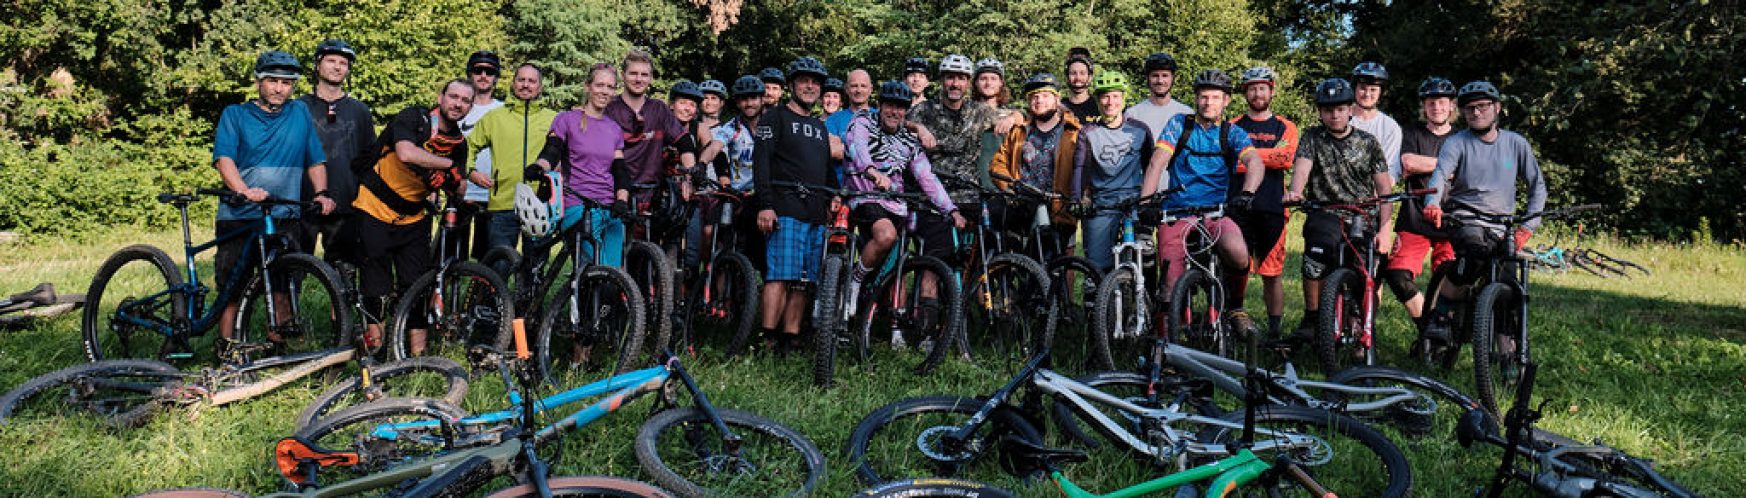 Mountainbike Club Konstanz - Der Club für alle Rider hat schon über 1000 Mitglieder